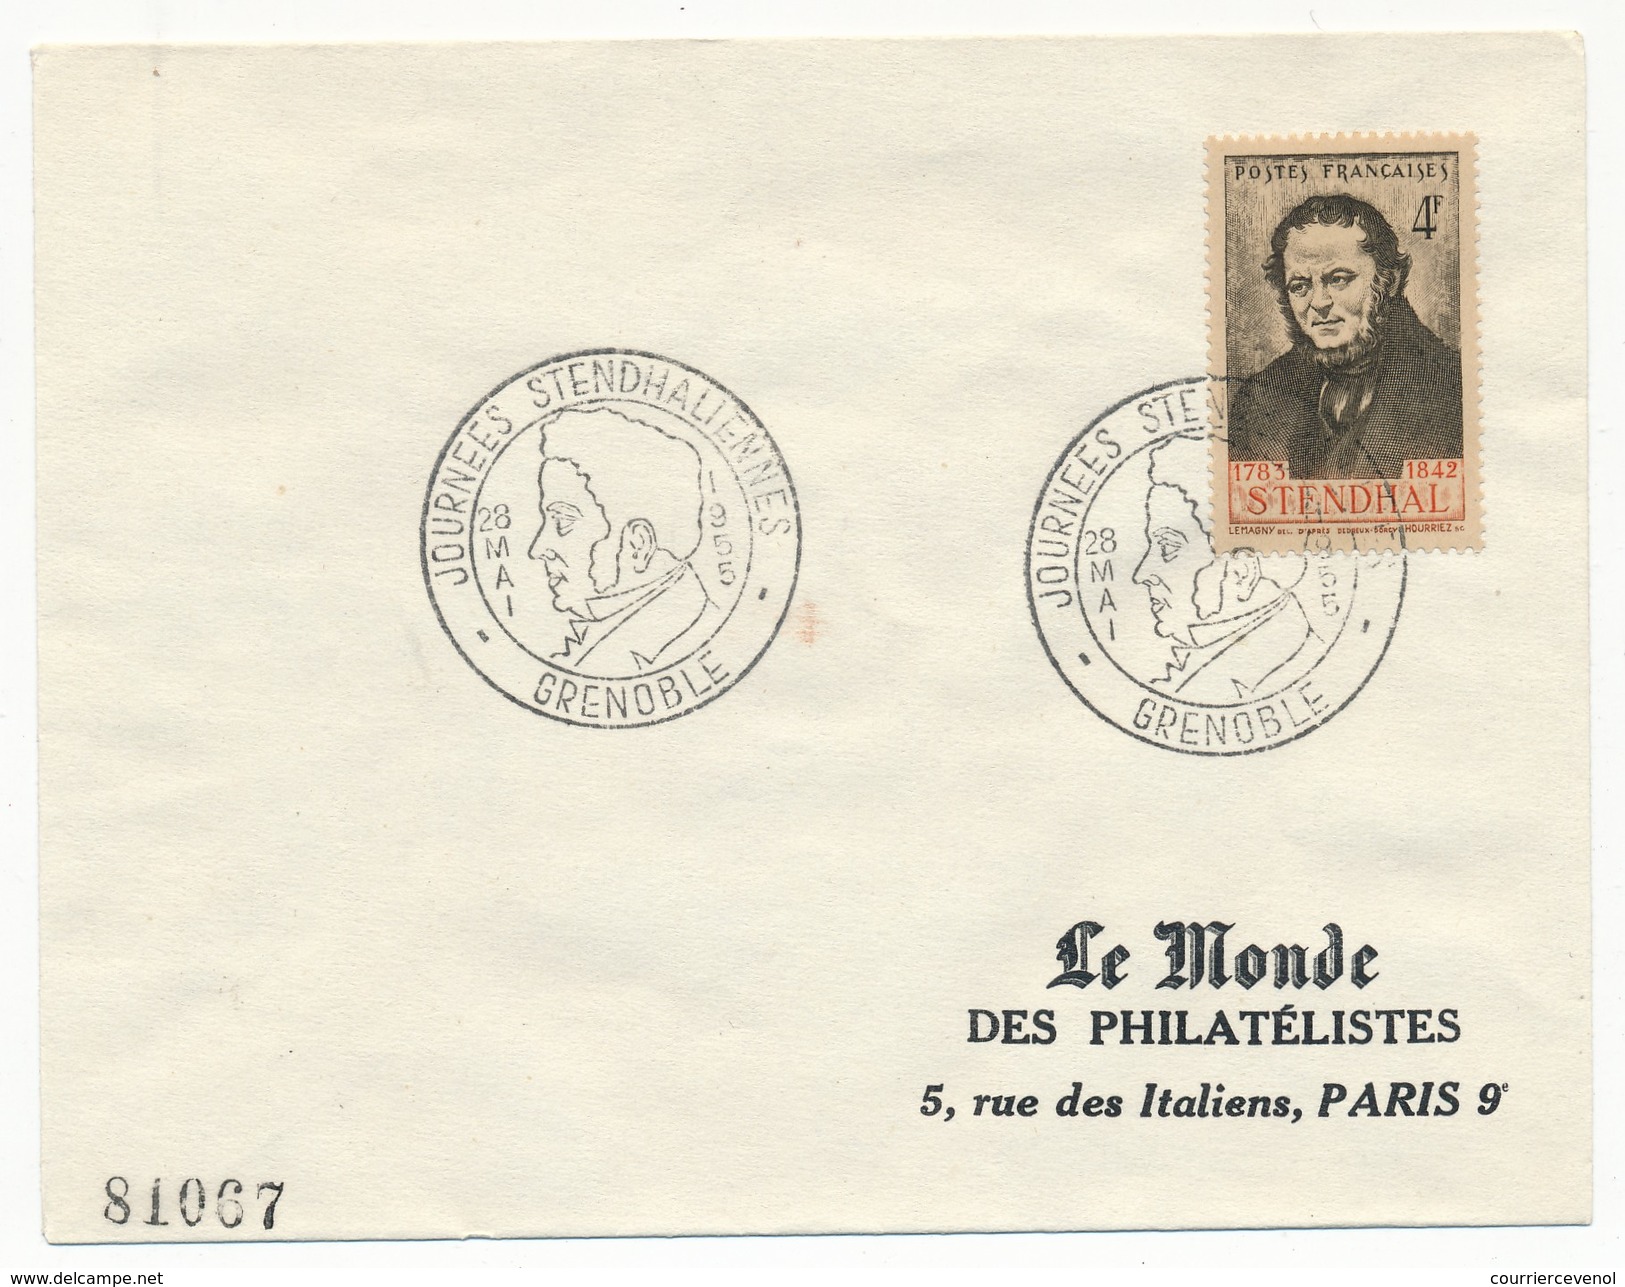 FRANCE - Enveloppe - Cachet Temporaire "Journées Stendhaliennes" GRENOBLE 28 Mai 1955 - Ecrivains